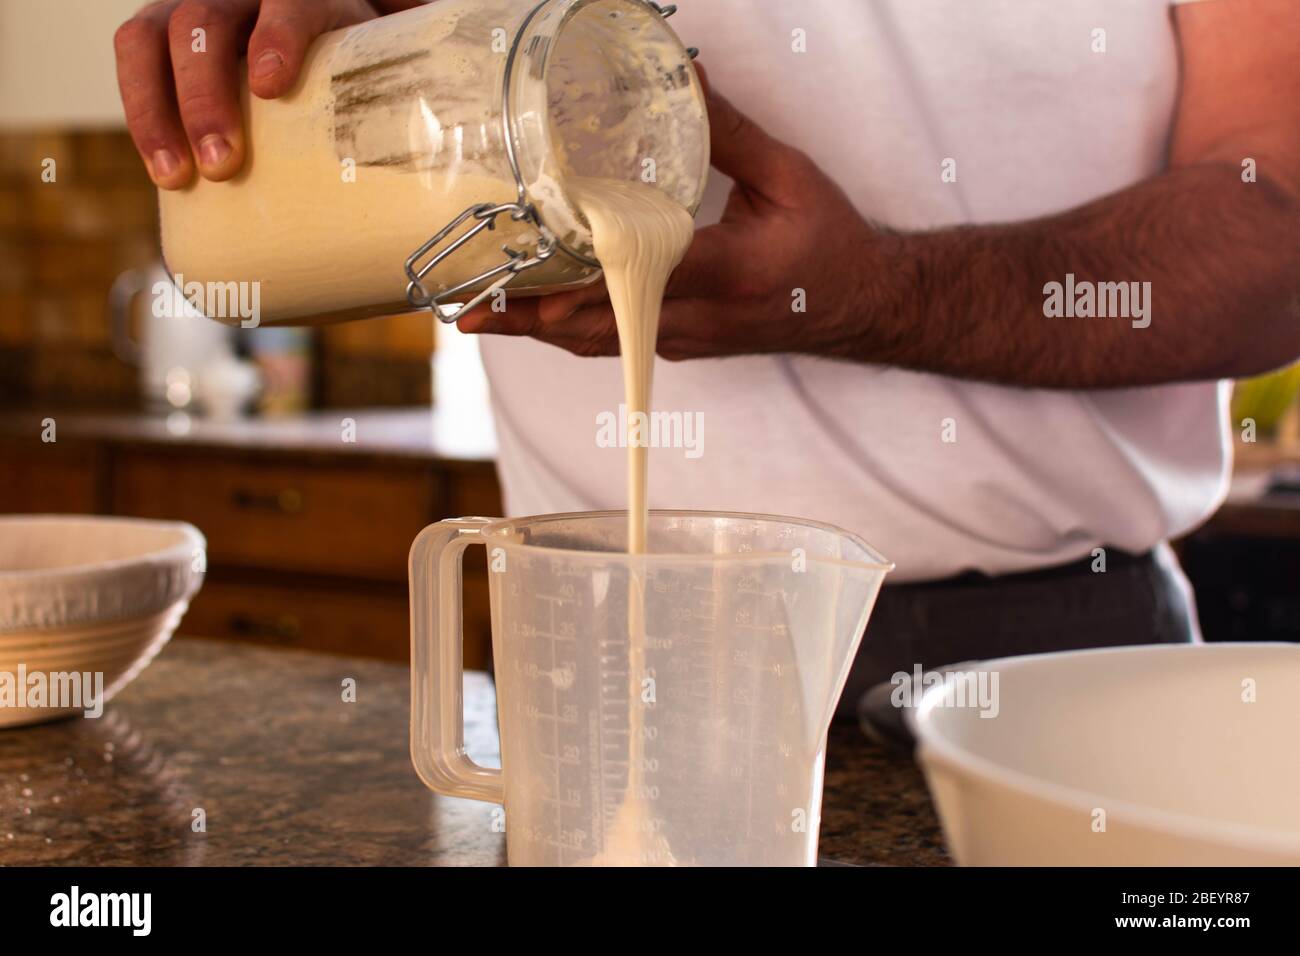 El pan de hornear del hombre mide el entrante de masa fermentada y vierte en una jarra mezcladora Foto de stock